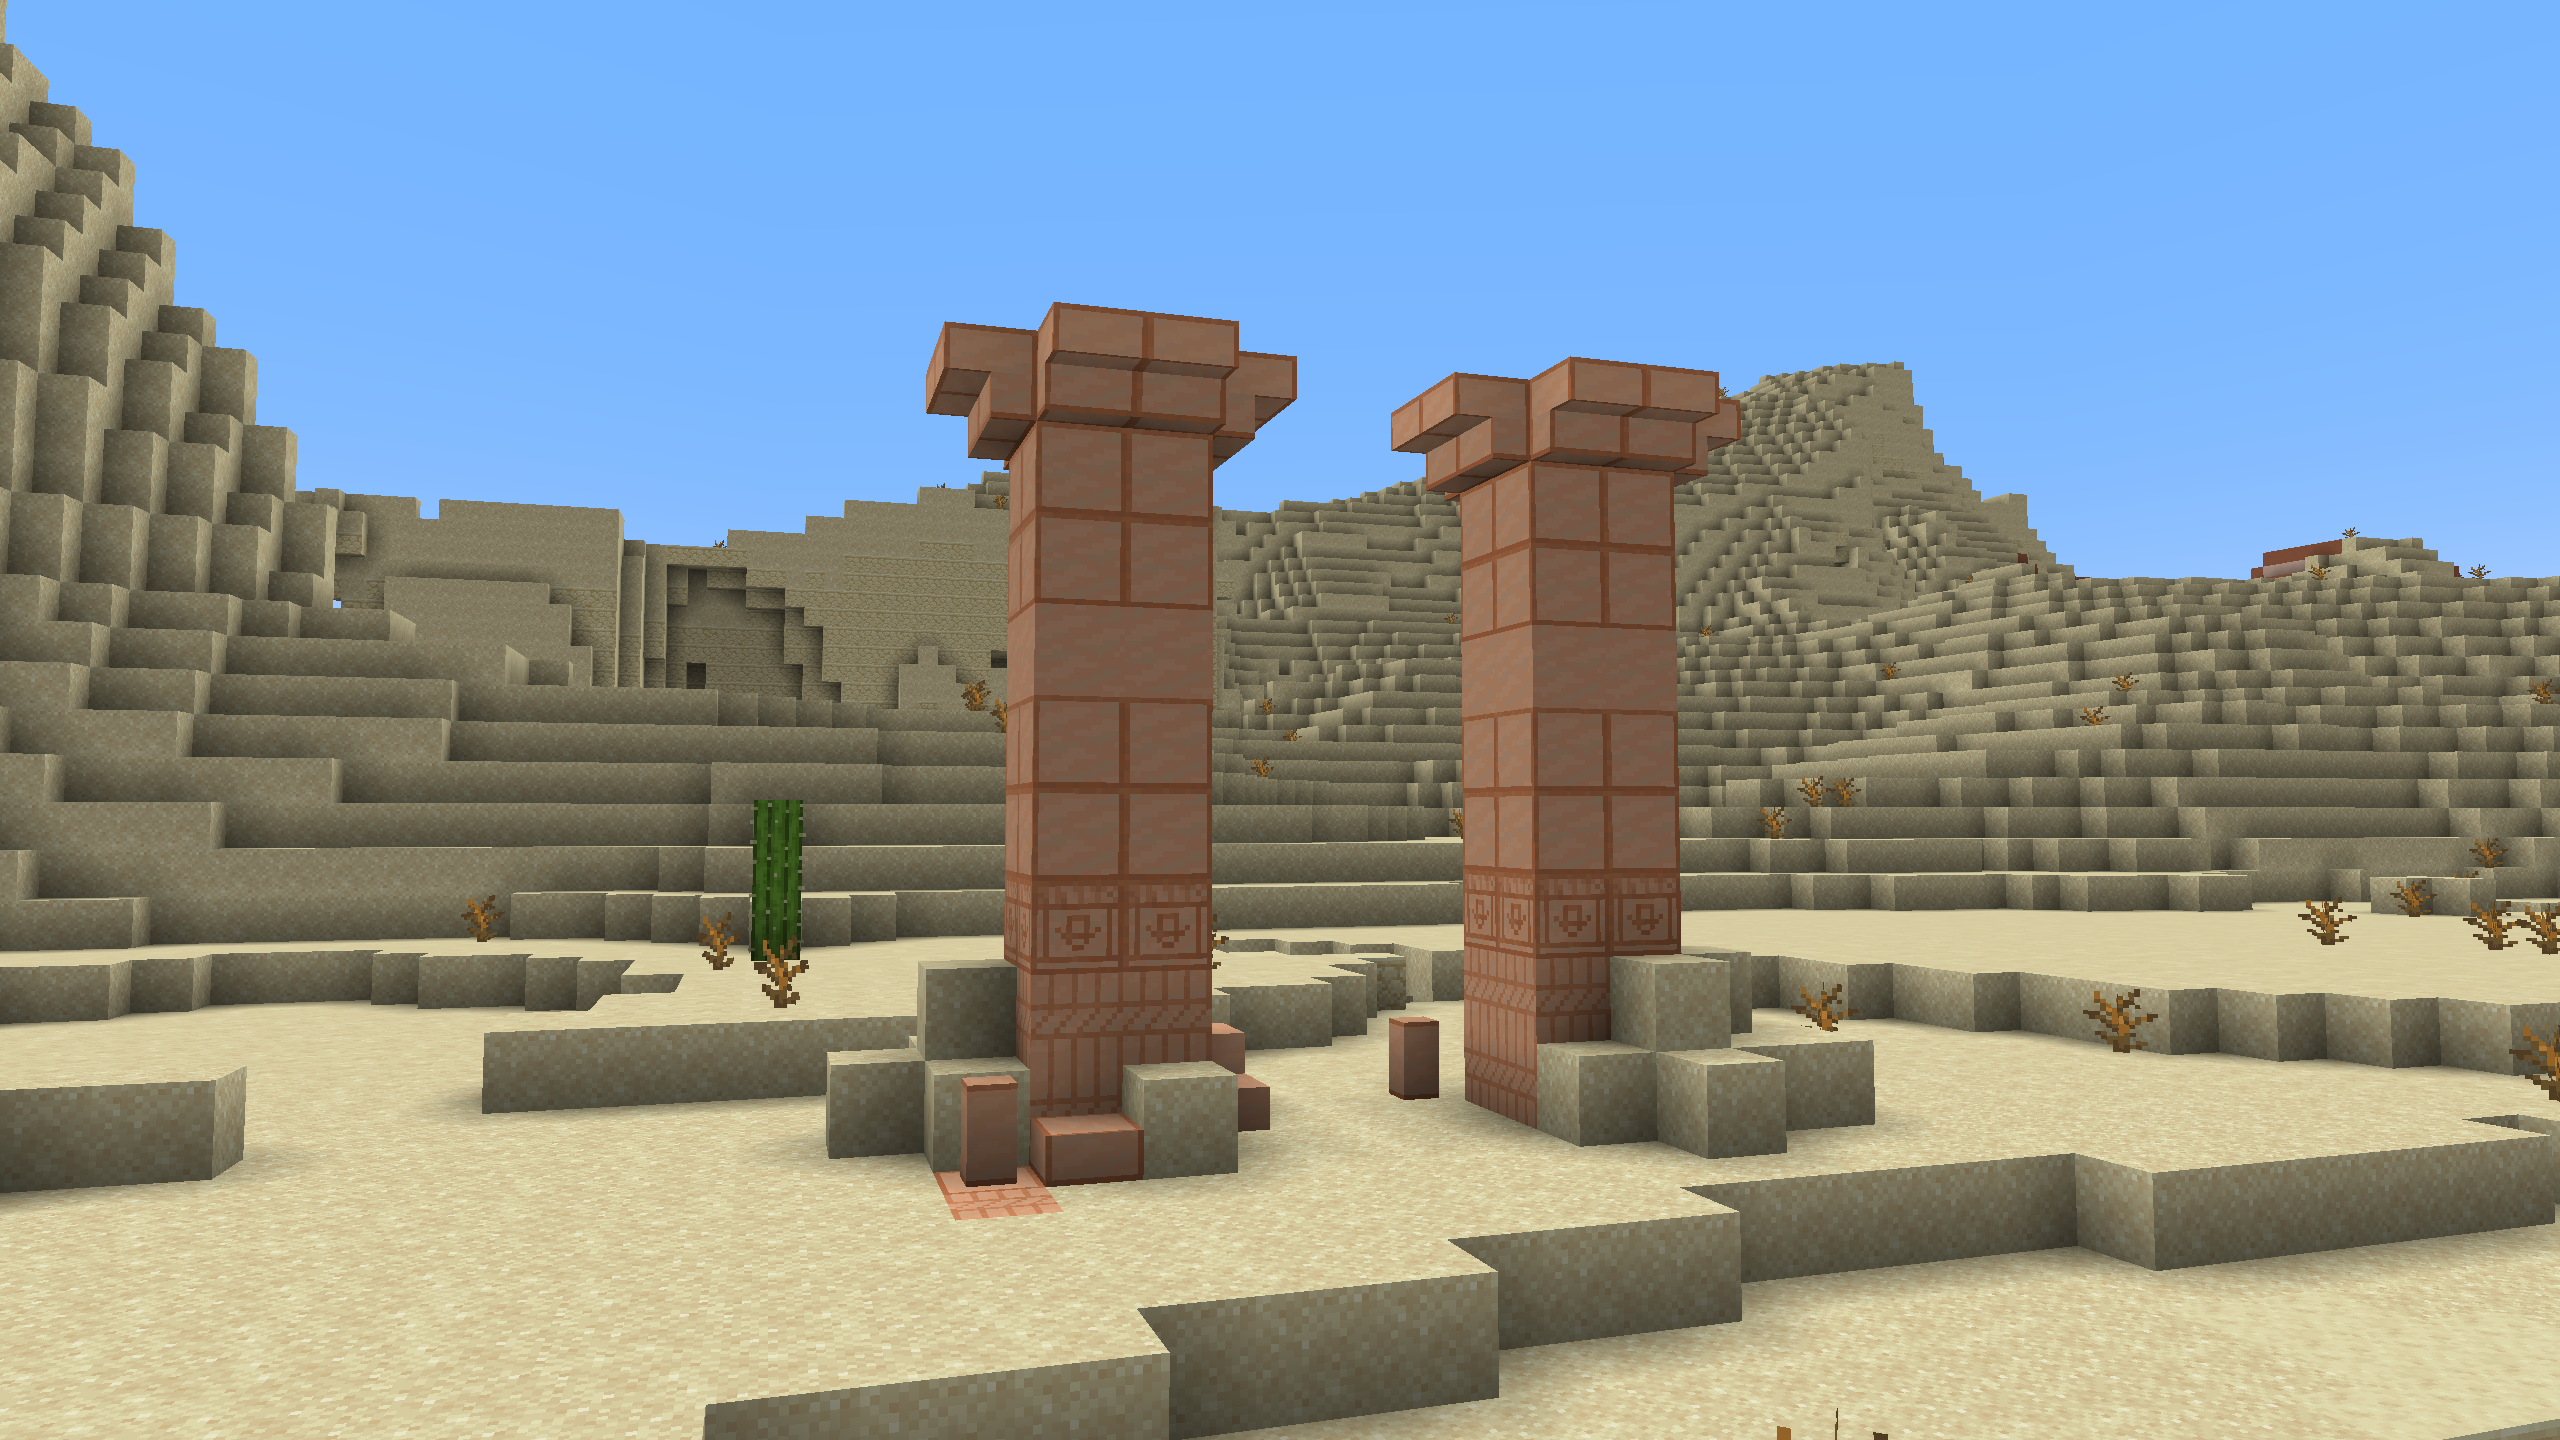 Gypsum Obelisks in the Desert